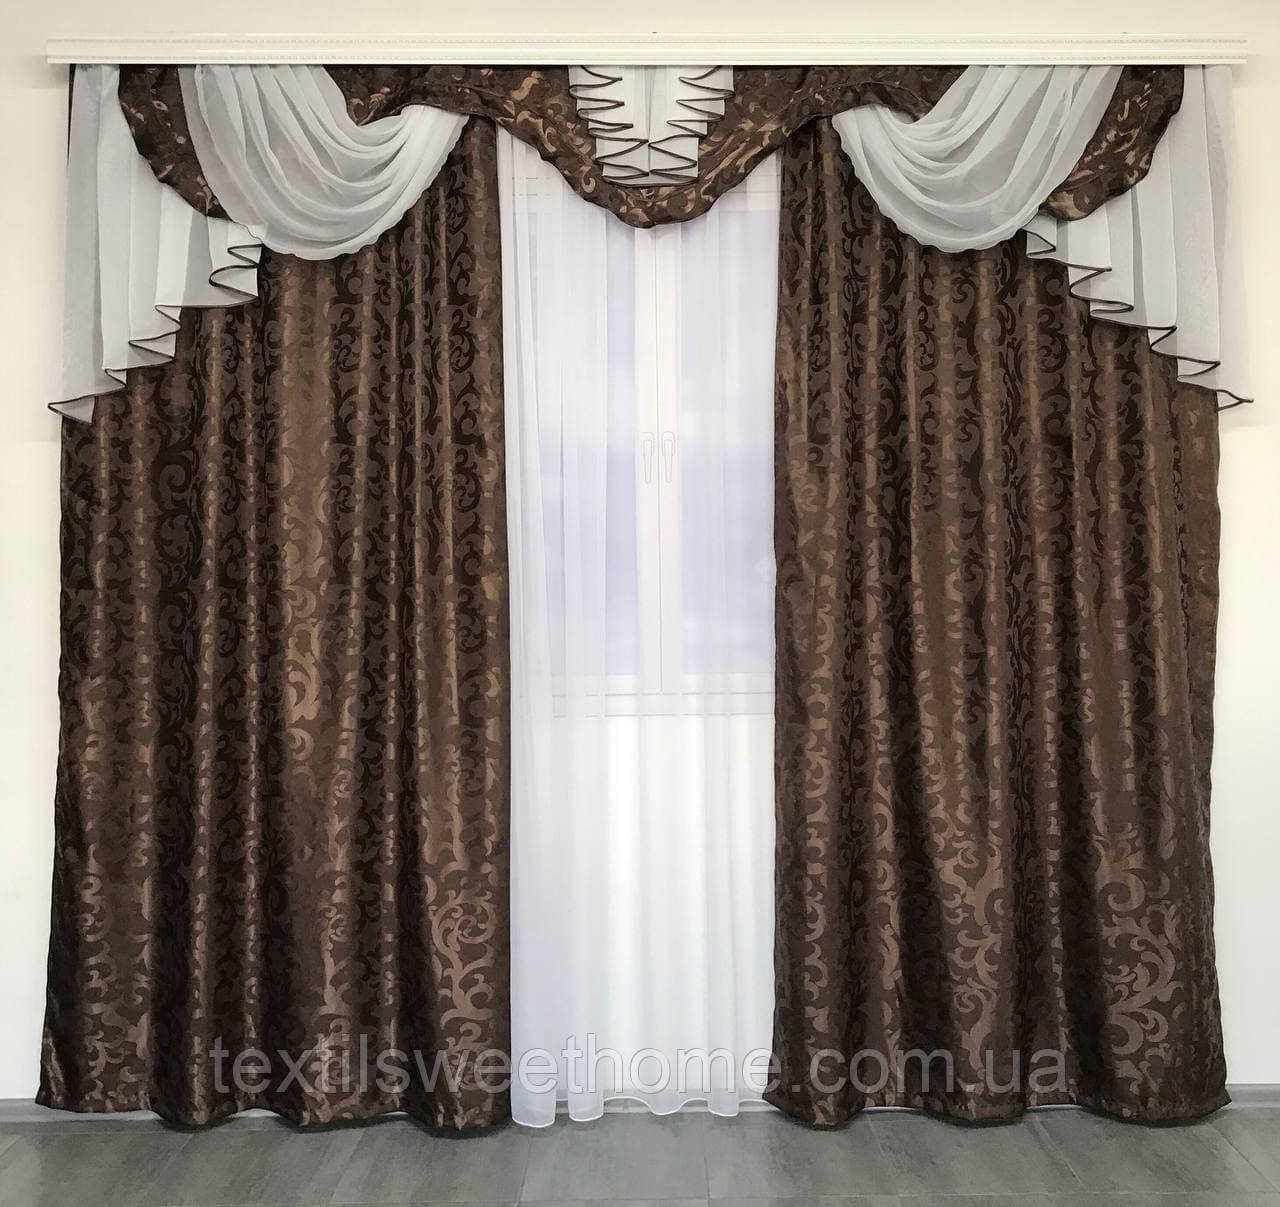 Набір готові штори з ламбрекеном на карниз 3 метри коричневого кольору в спальню, вітальню